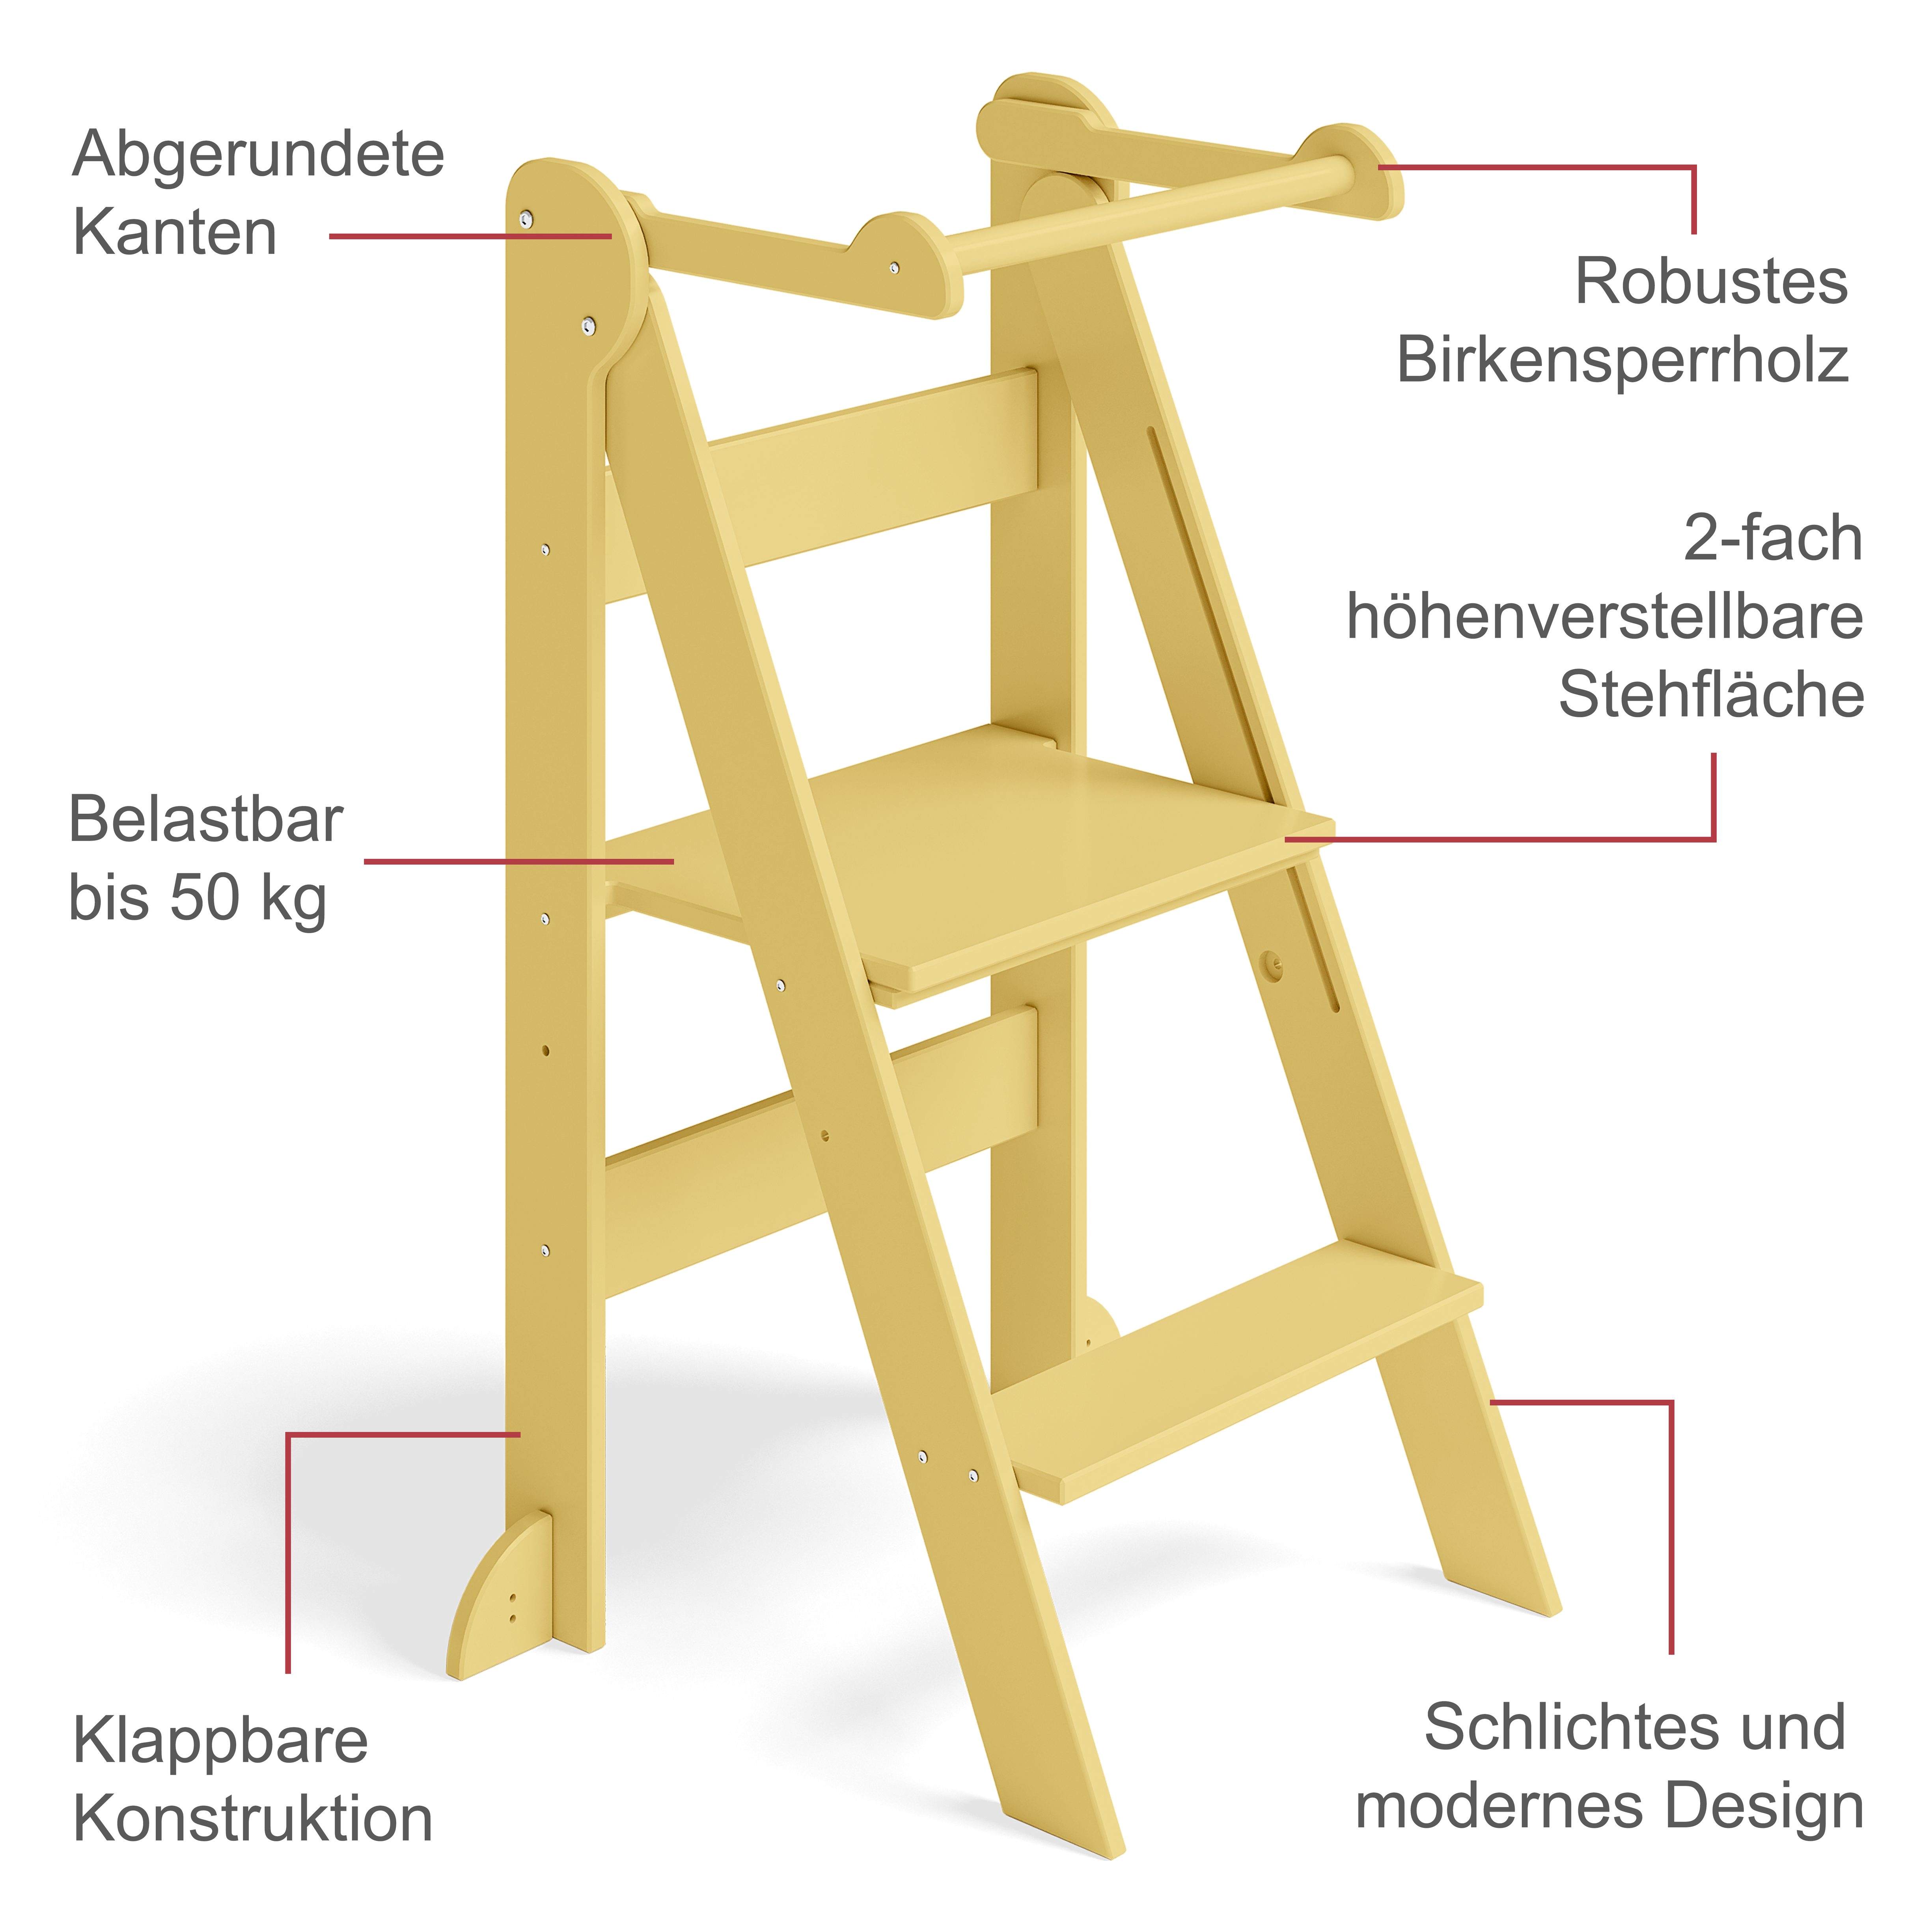 Tay | gelb Stehhilfe (Lernturm), gelb 2-fach zusammenklappbar, höhenverstellbar, gelb Bellabino